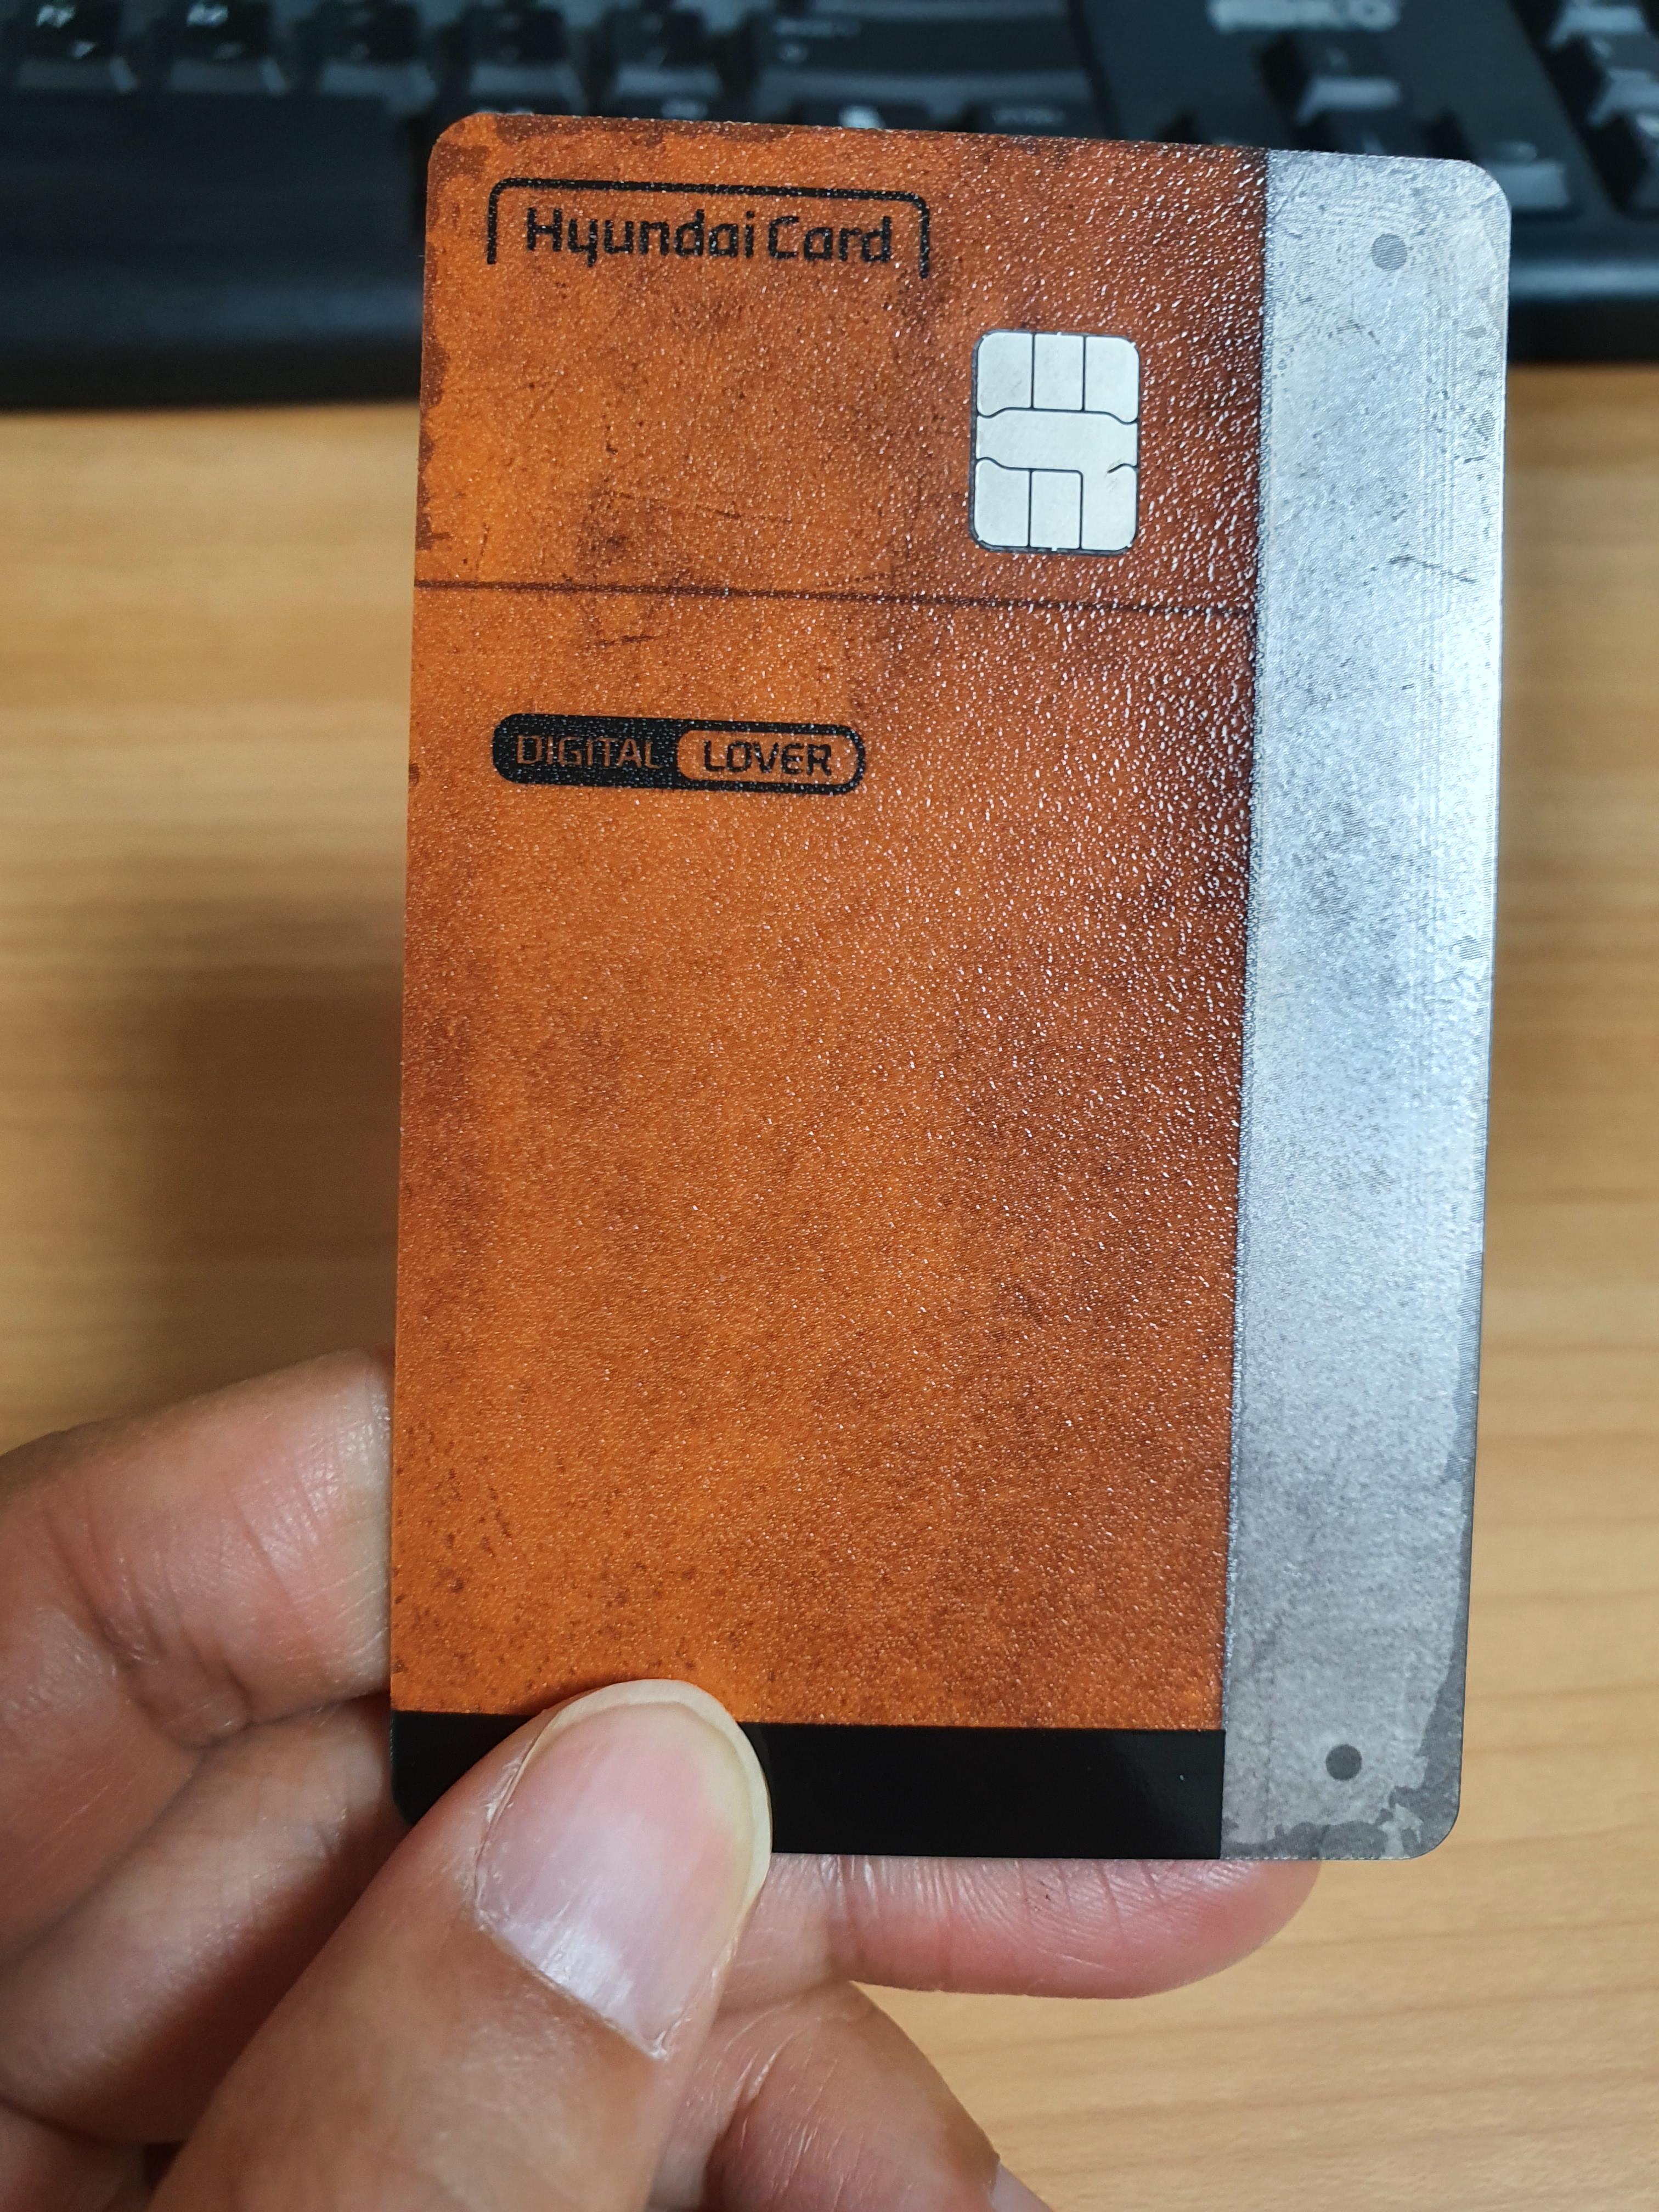 현대카드-디지털러버